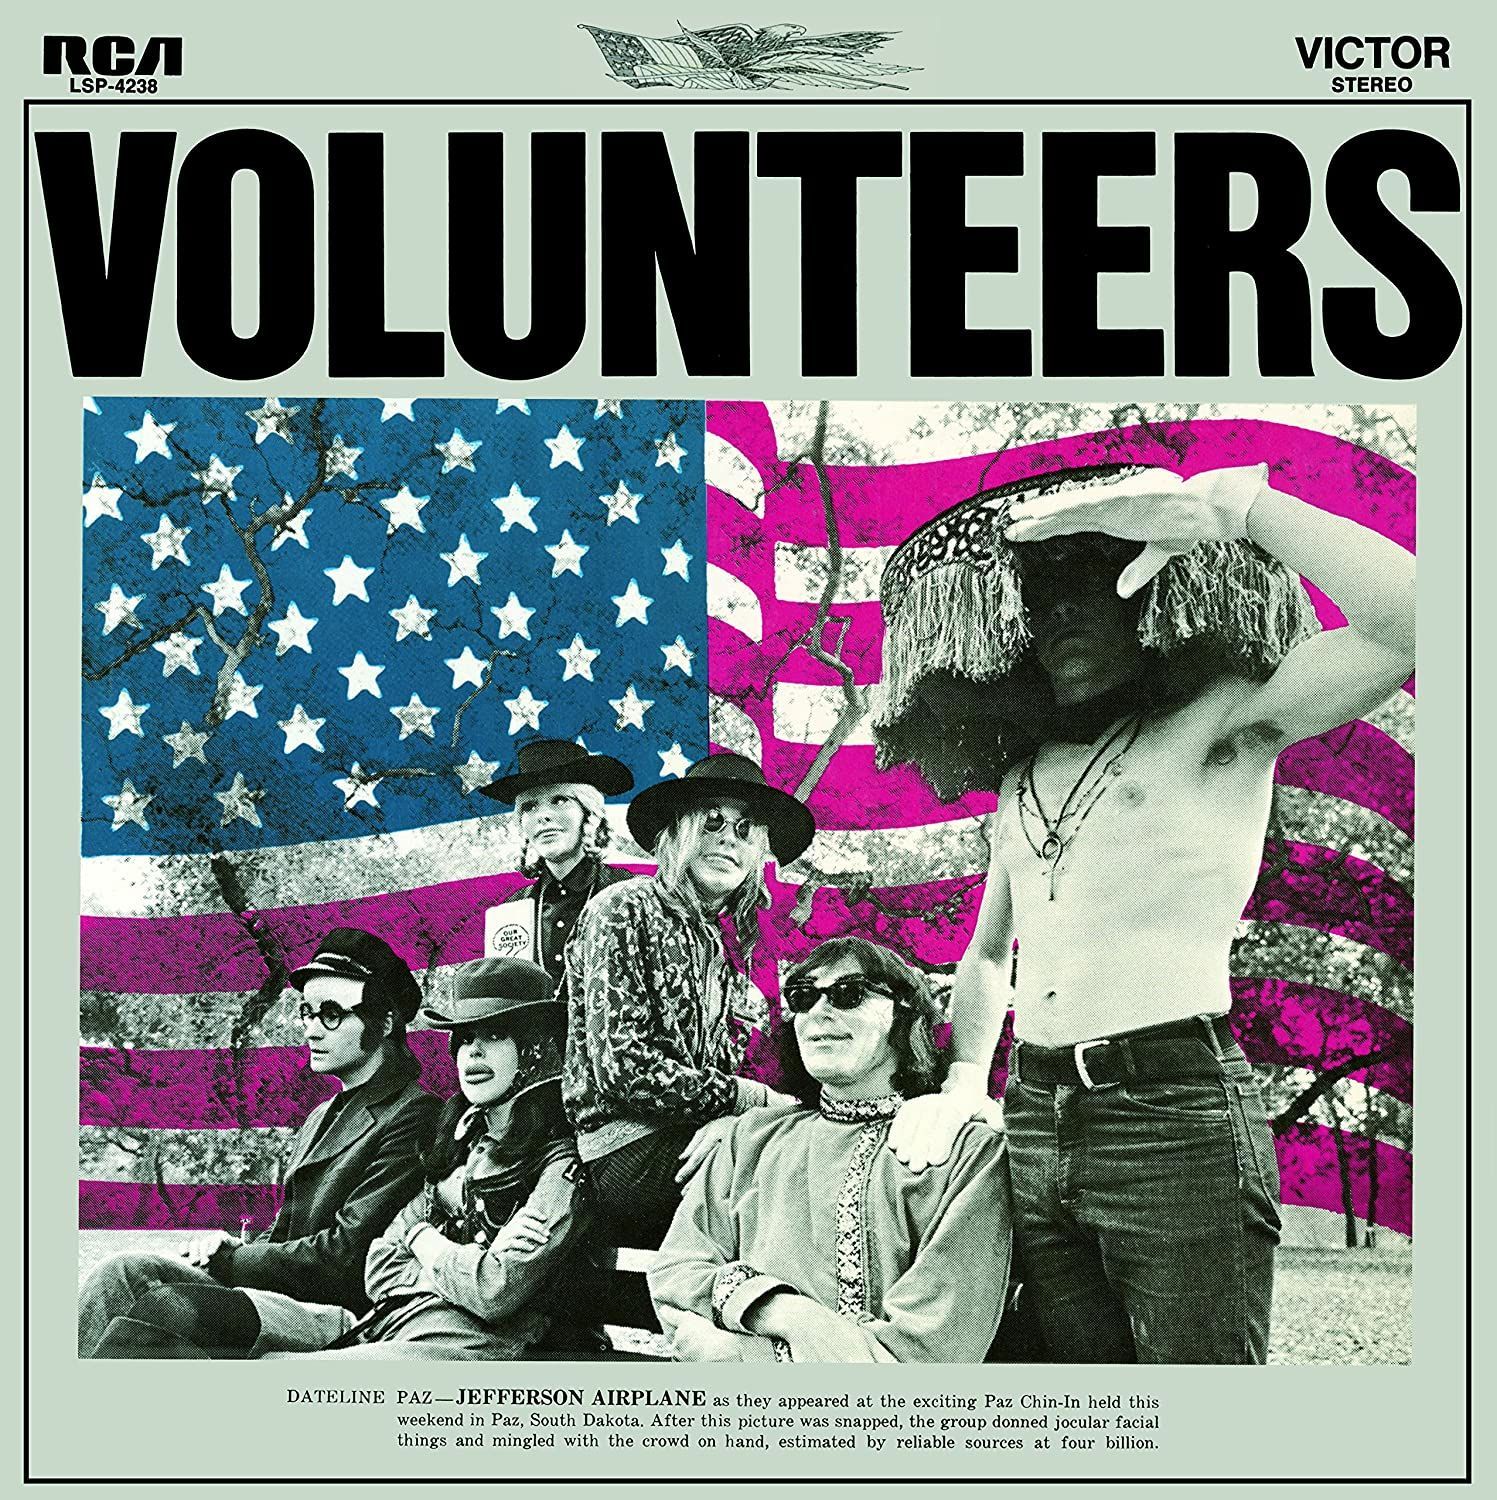 Imagem do álbum Volunteers do(a) artista Jefferson Airplane